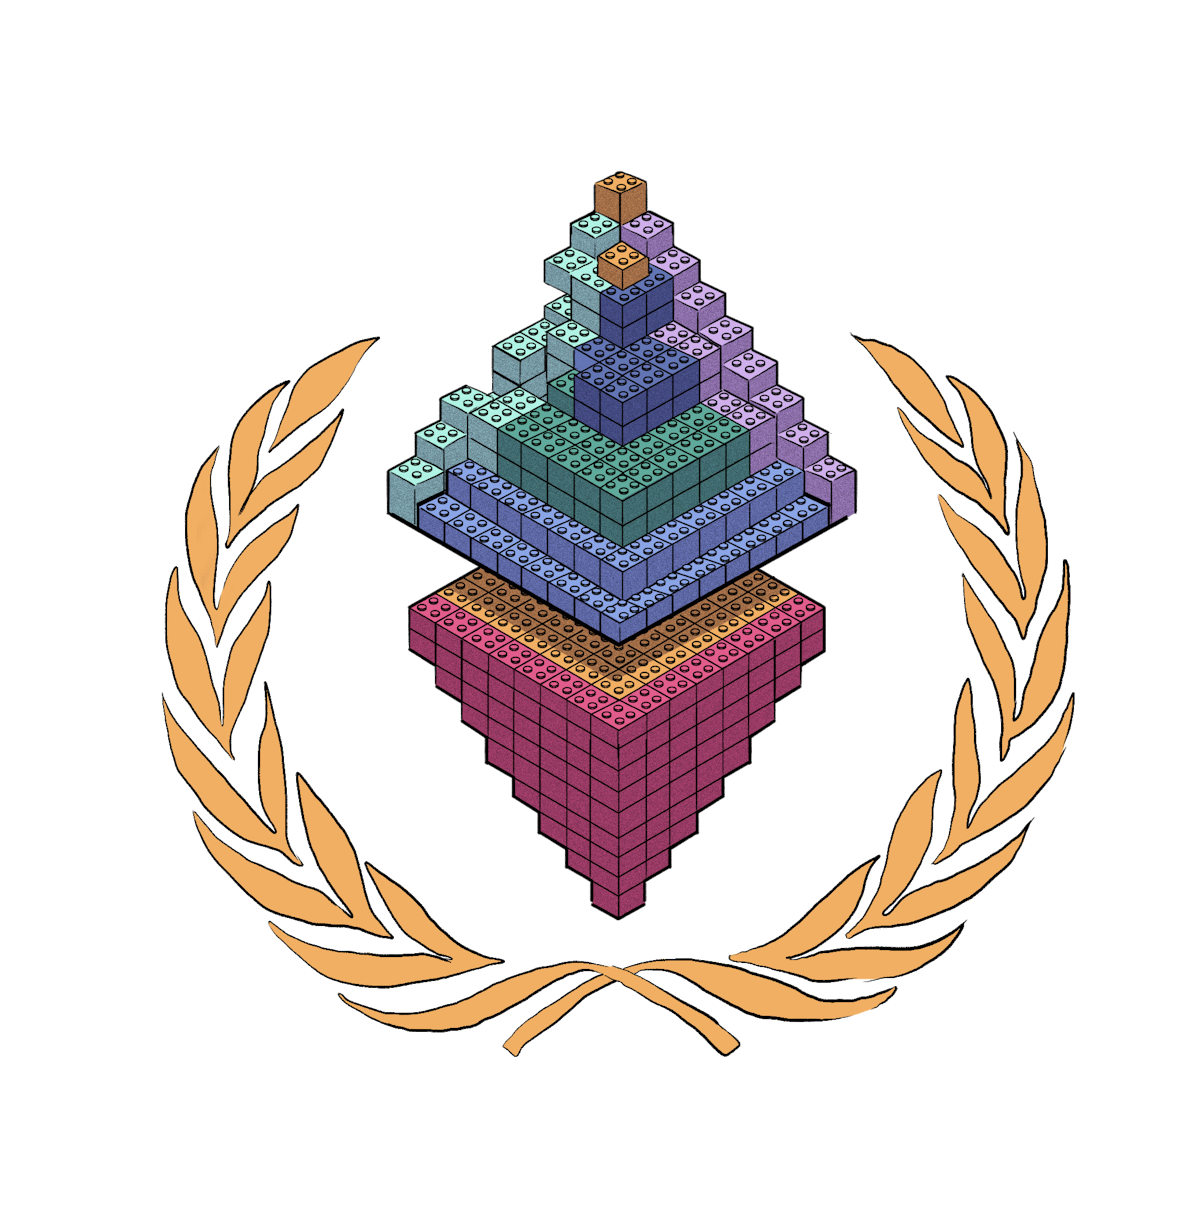 An Ethereum logo made of lego bricks.